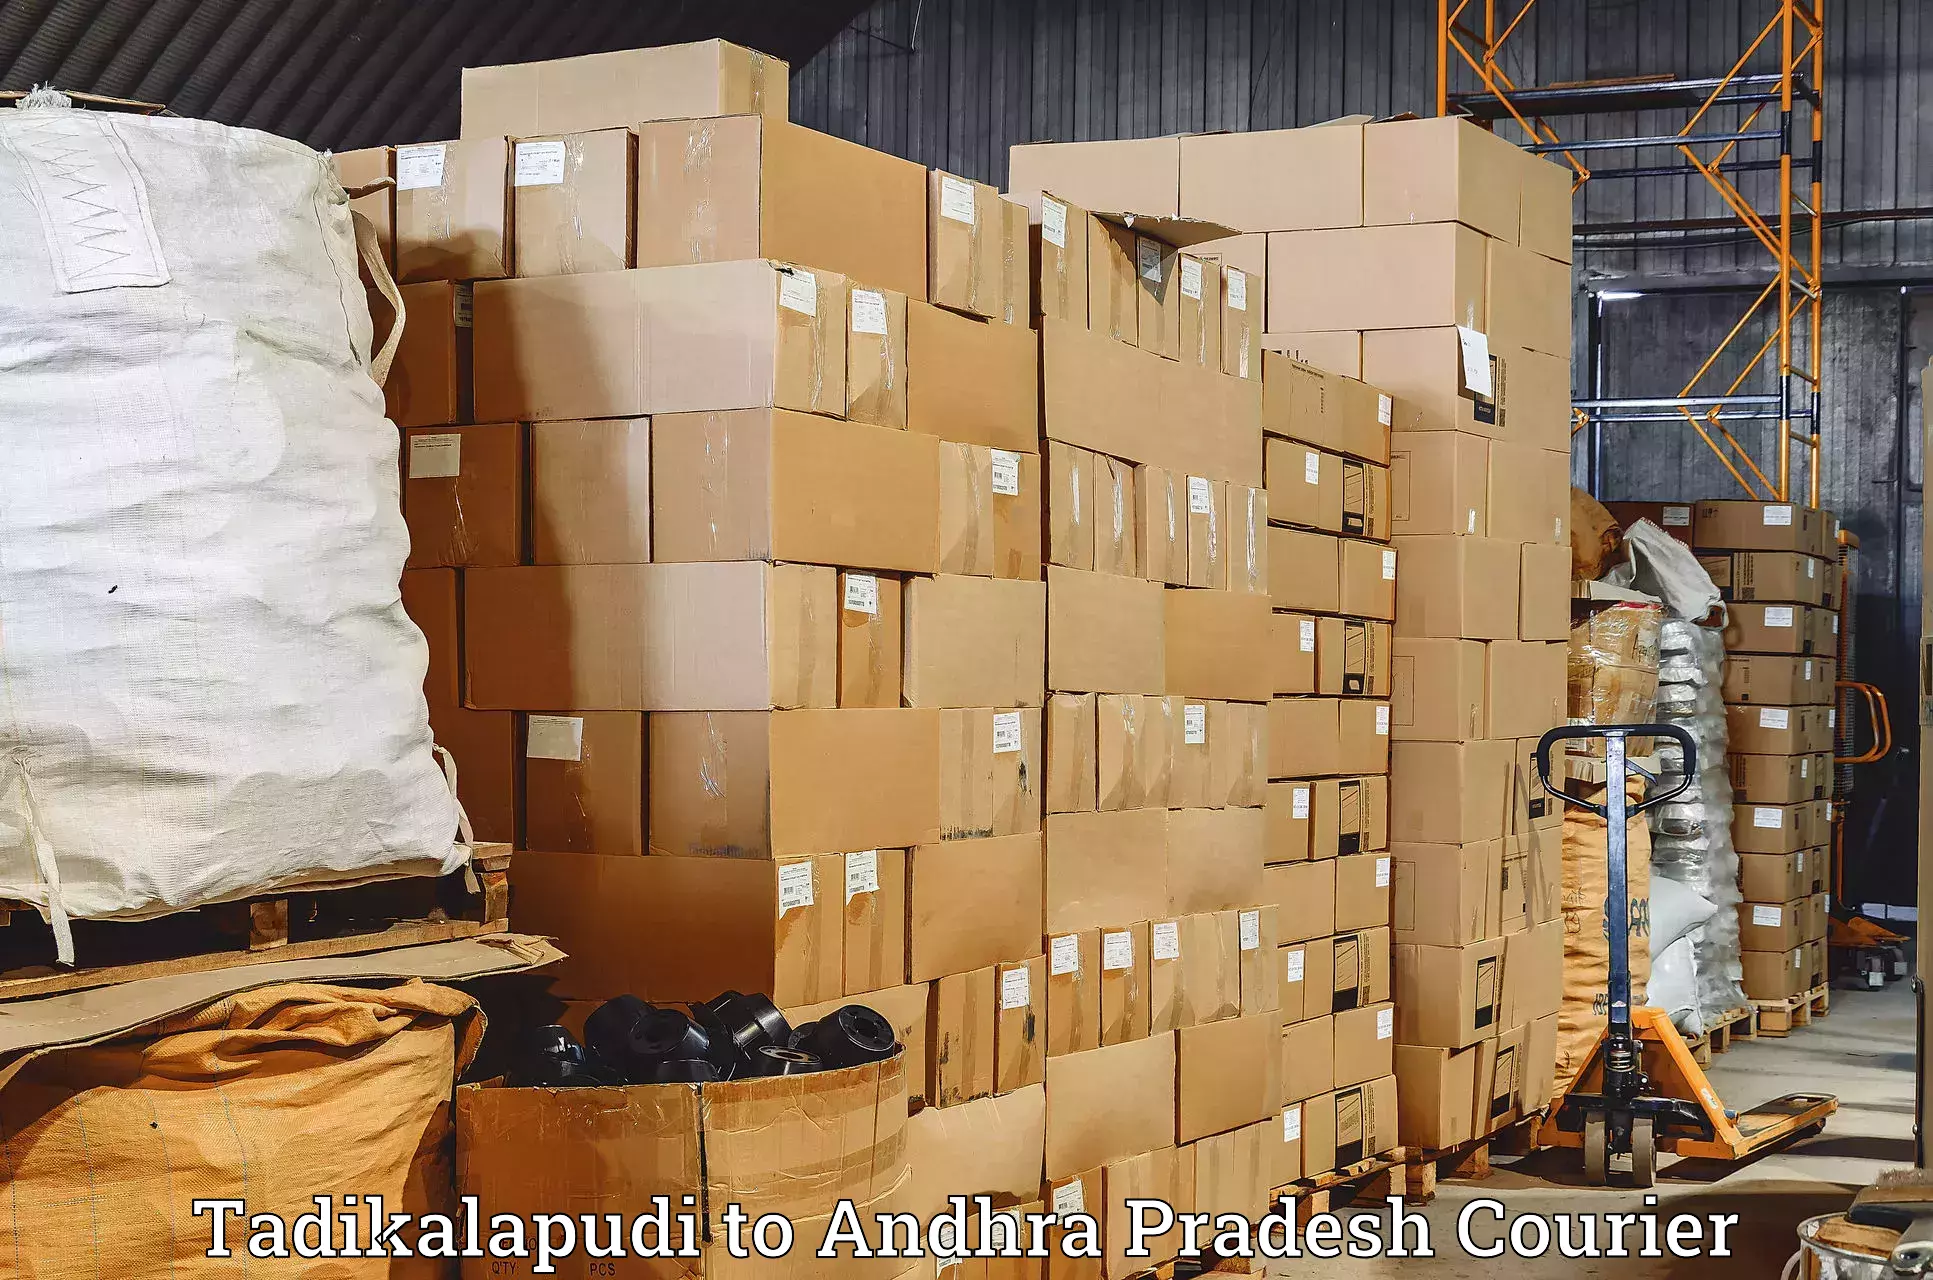 Express courier facilities Tadikalapudi to Kambadur